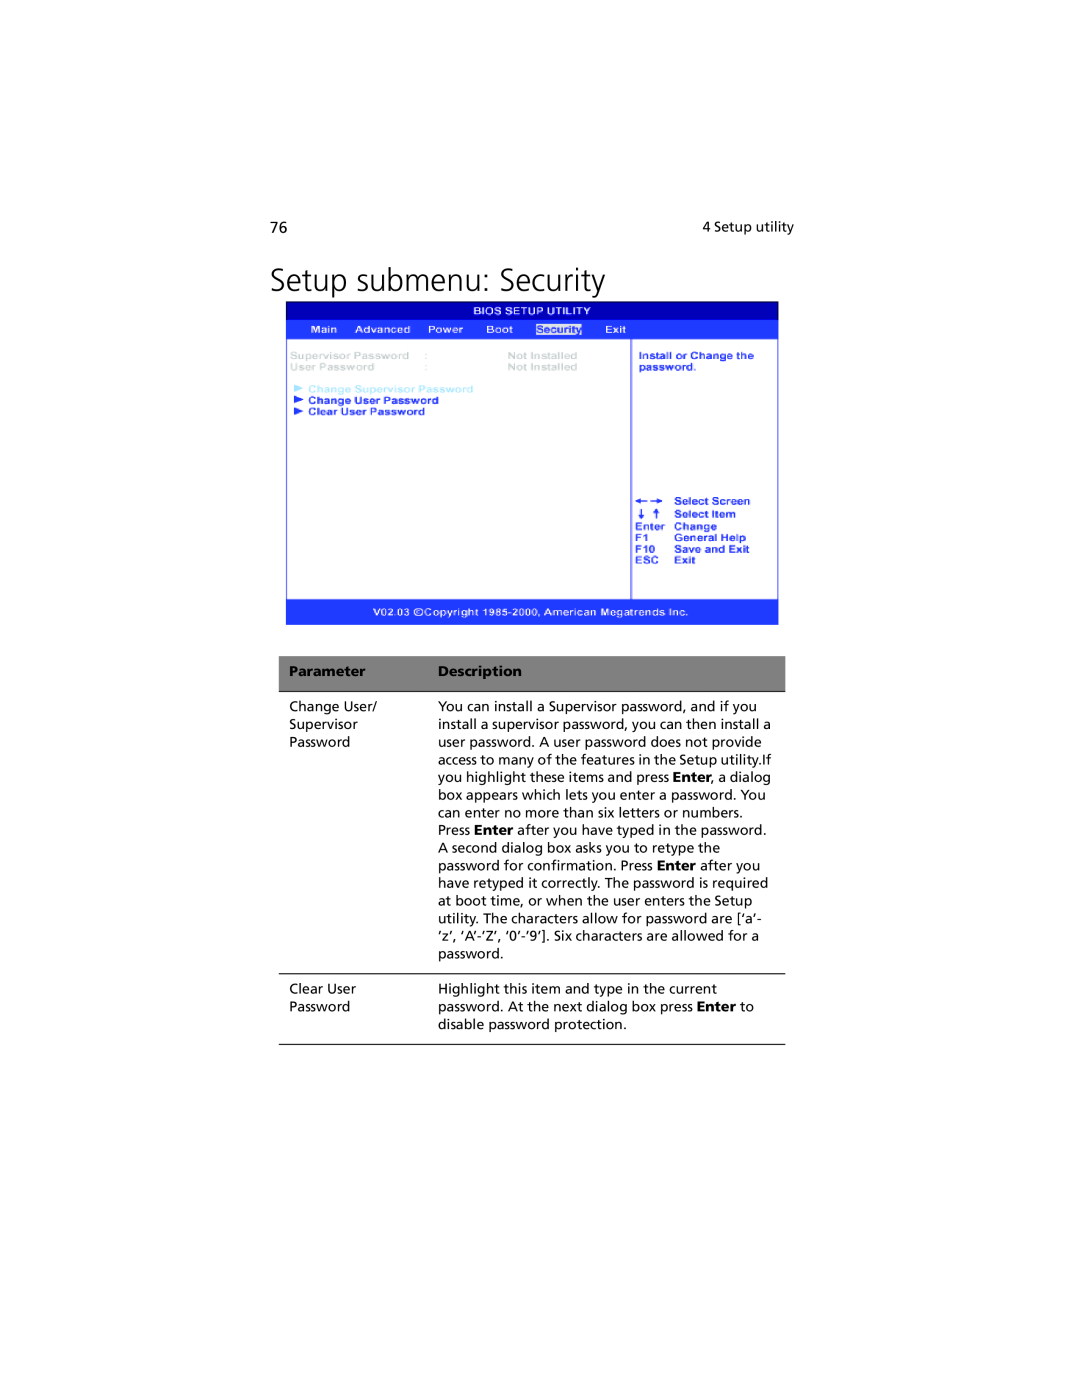 Acer G301 manual Setup submenu Security, Parameter, Description 